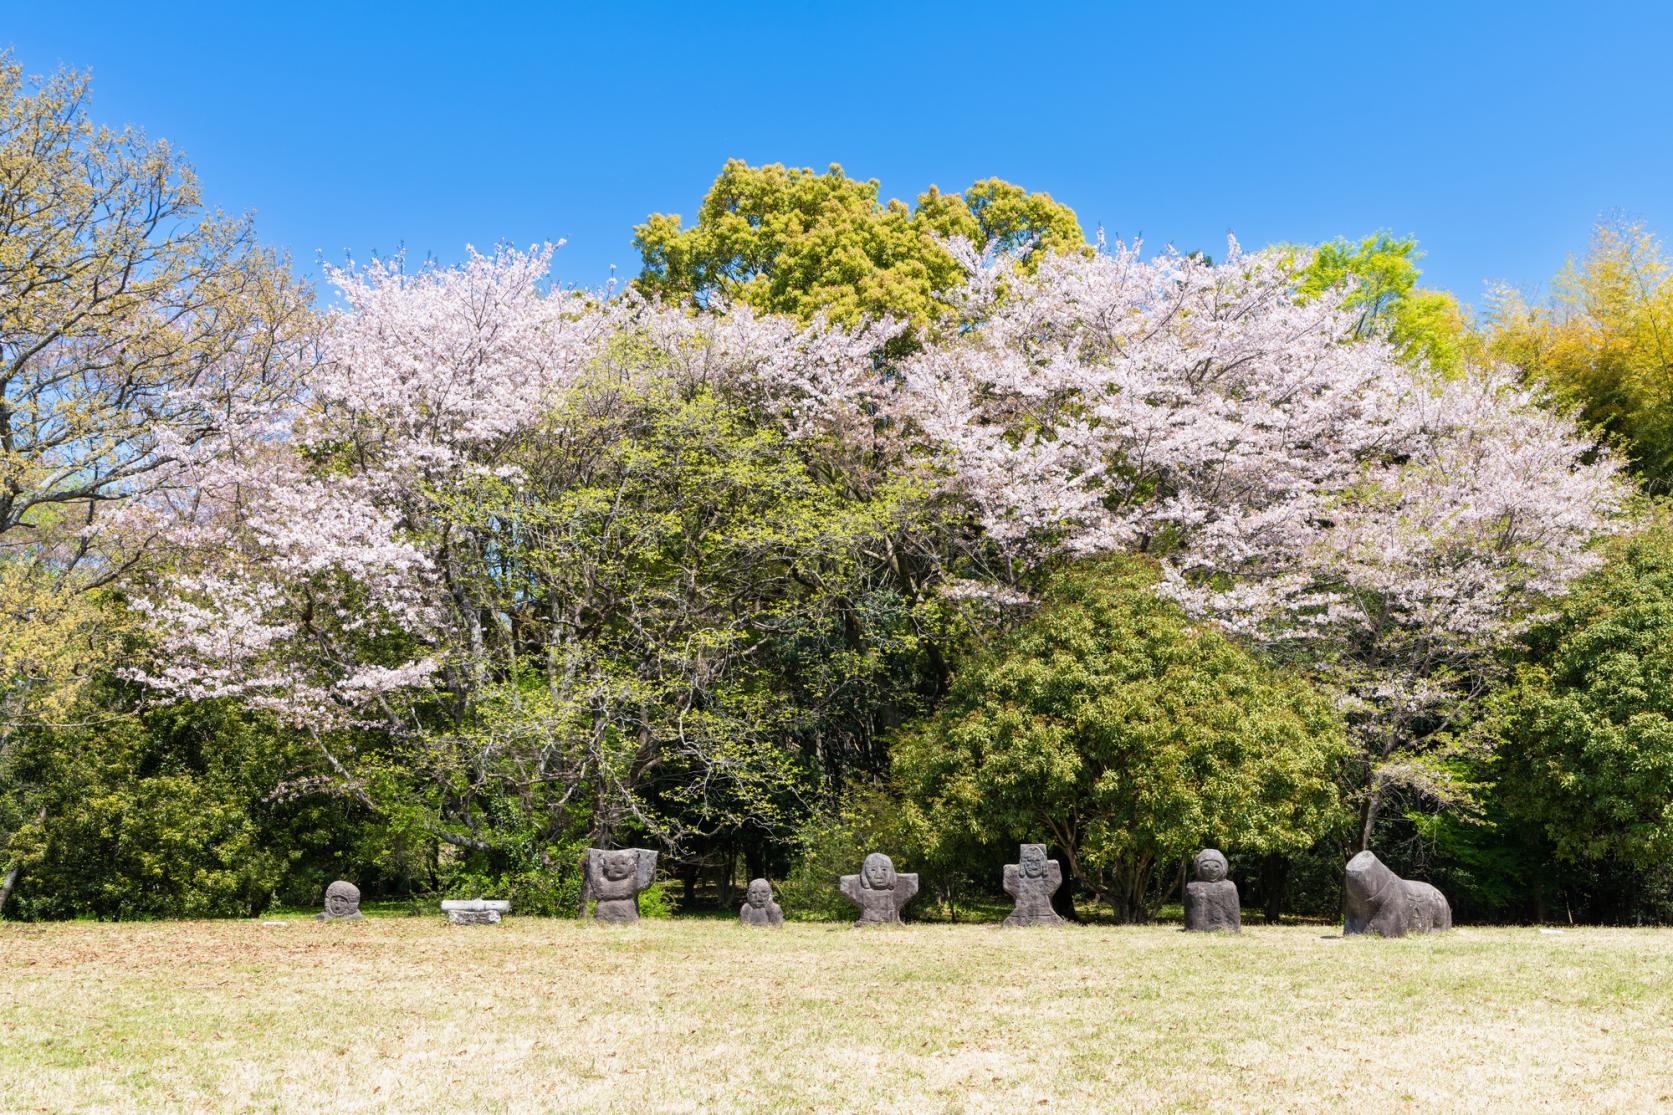 Iwatoyama Tombs